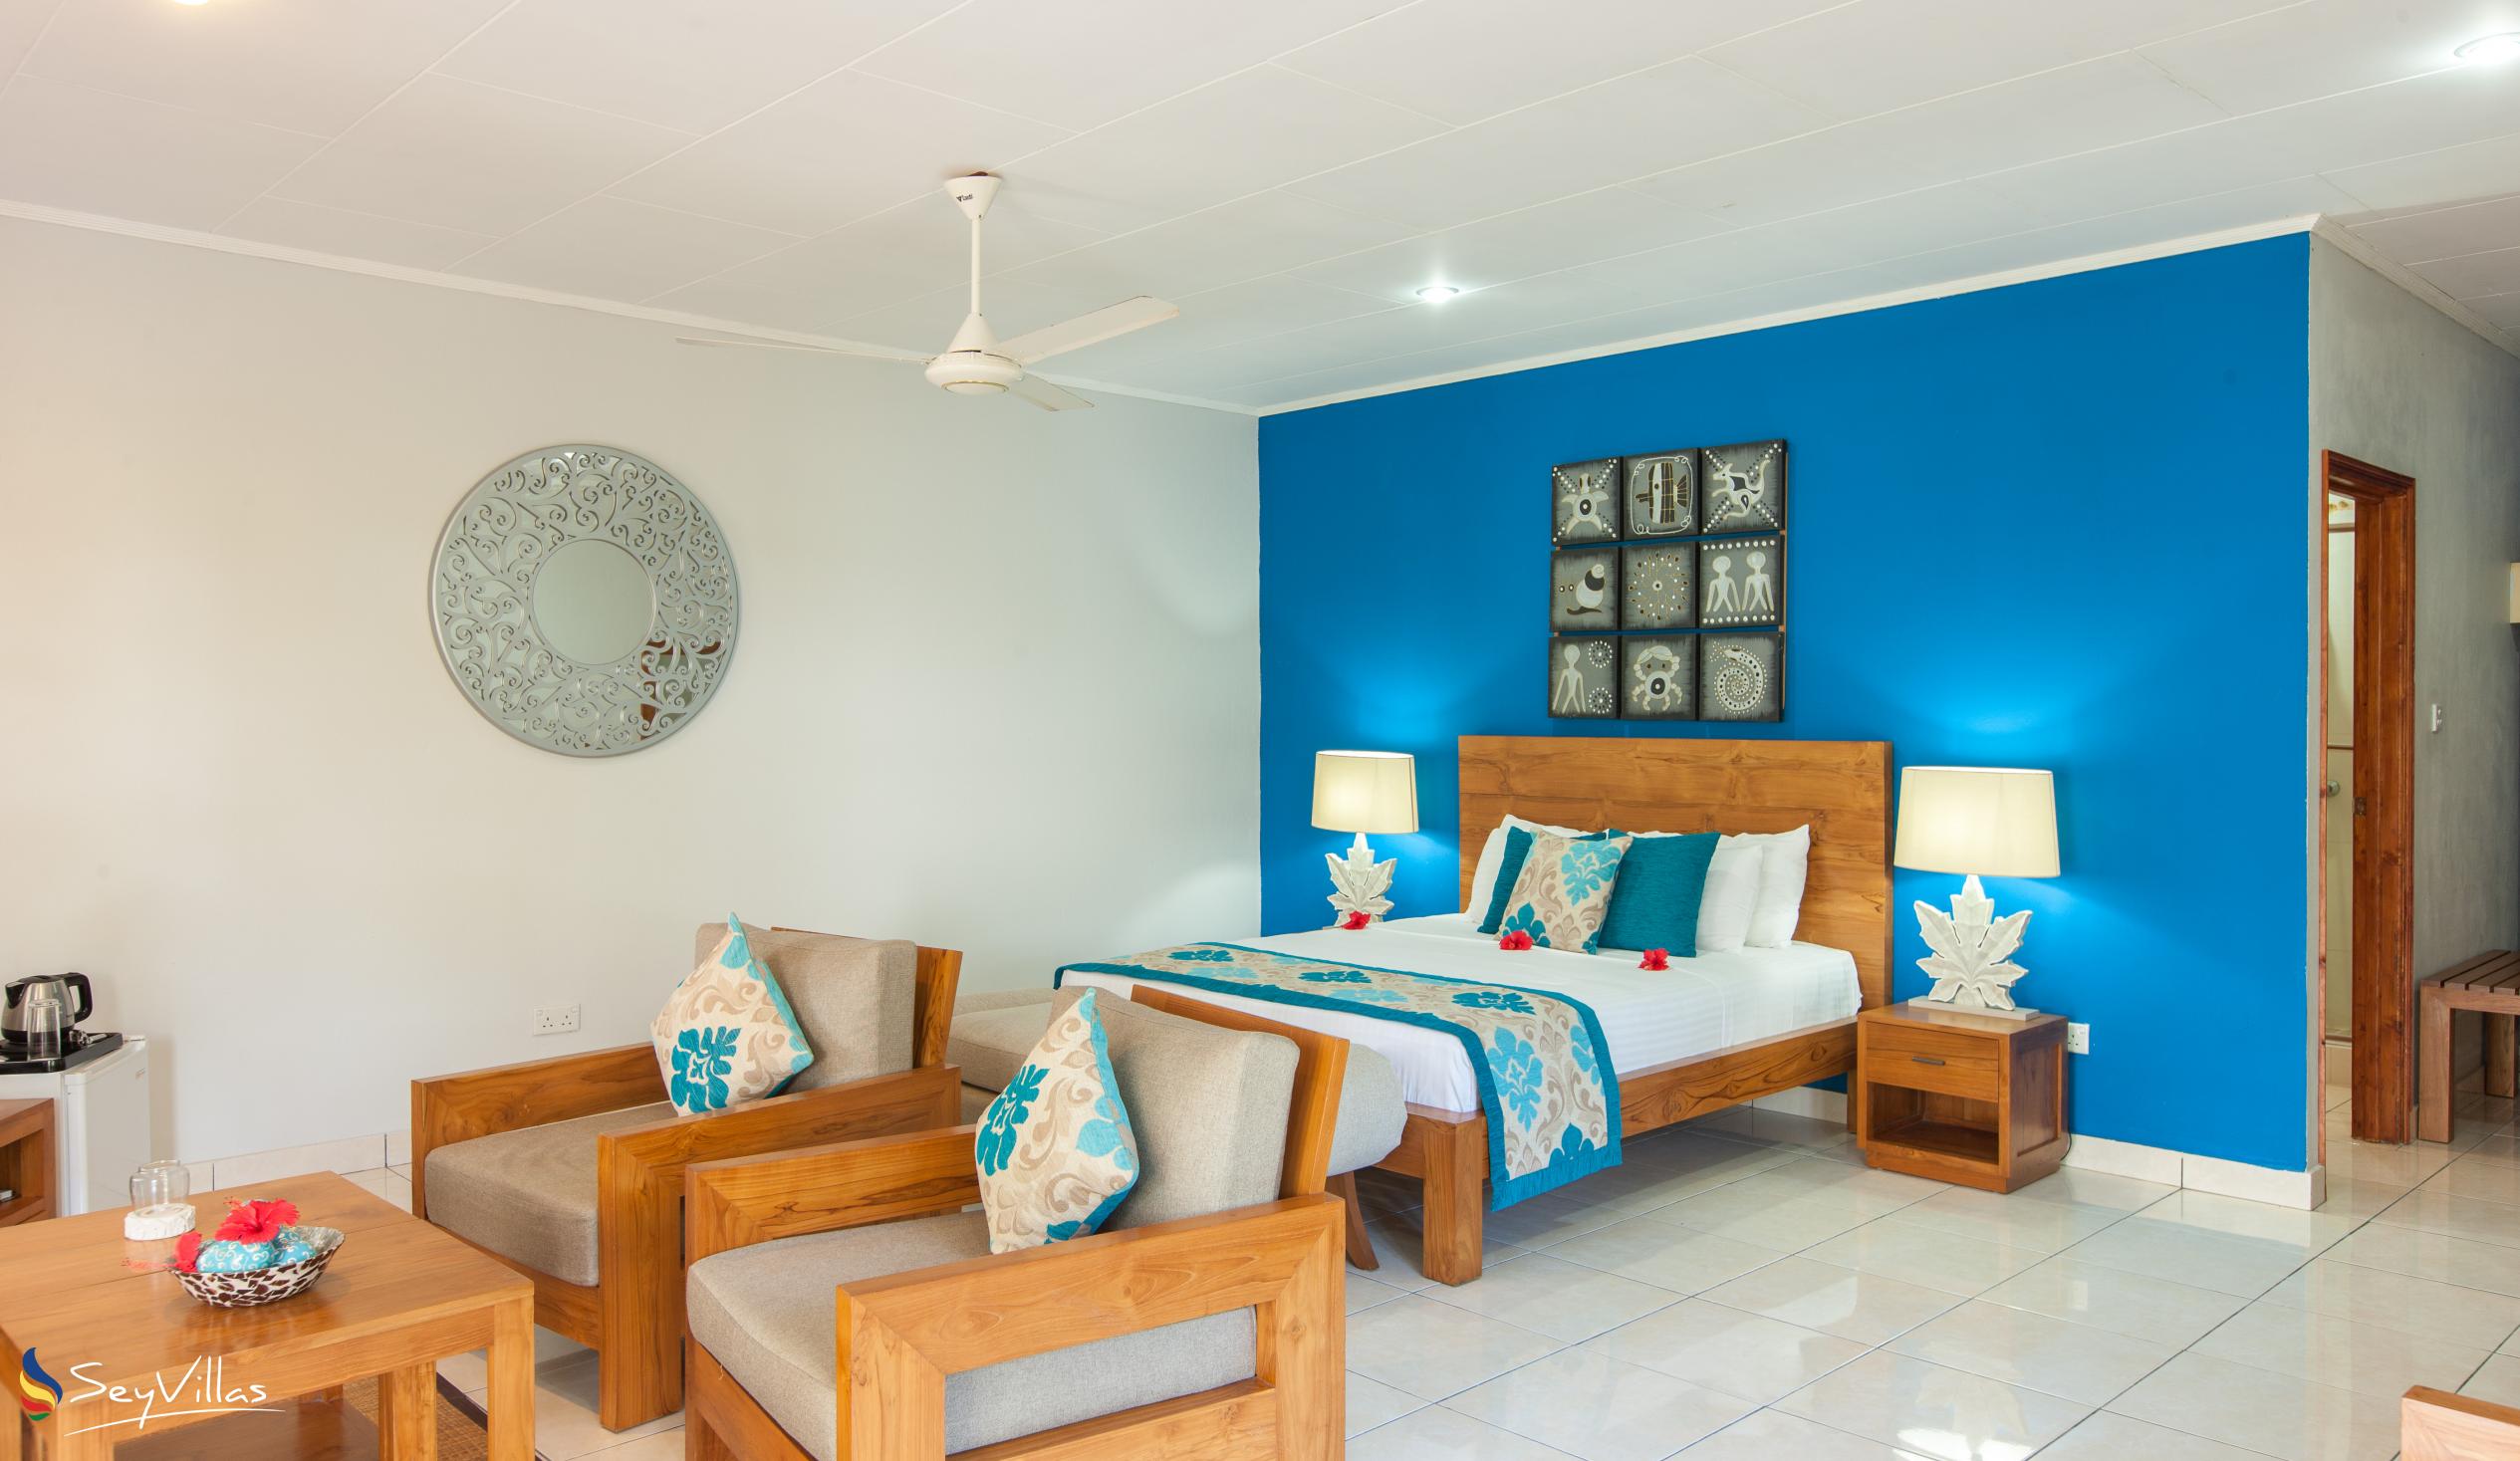 Foto 37: Villas de Mer - Suite Junior - Praslin (Seychelles)